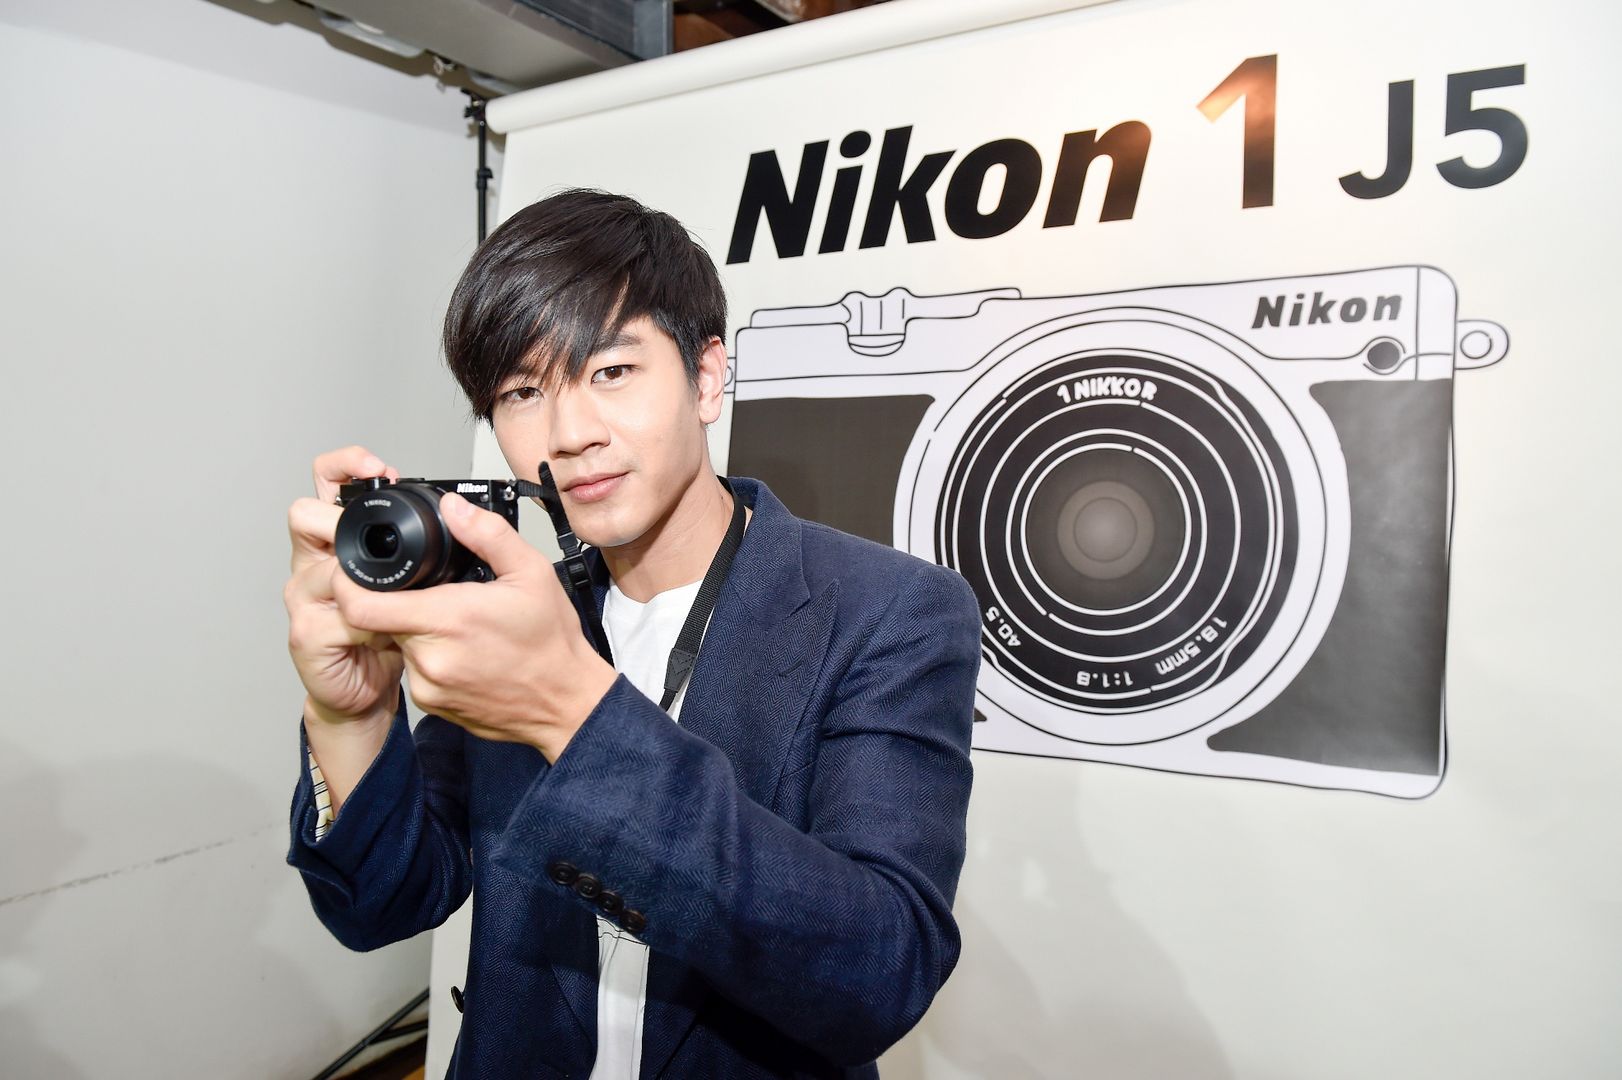 Nikon แนะนำ 5 เทคนิคการถ่ายภาพสื่อความรู้สึกอย่างง่ายๆ